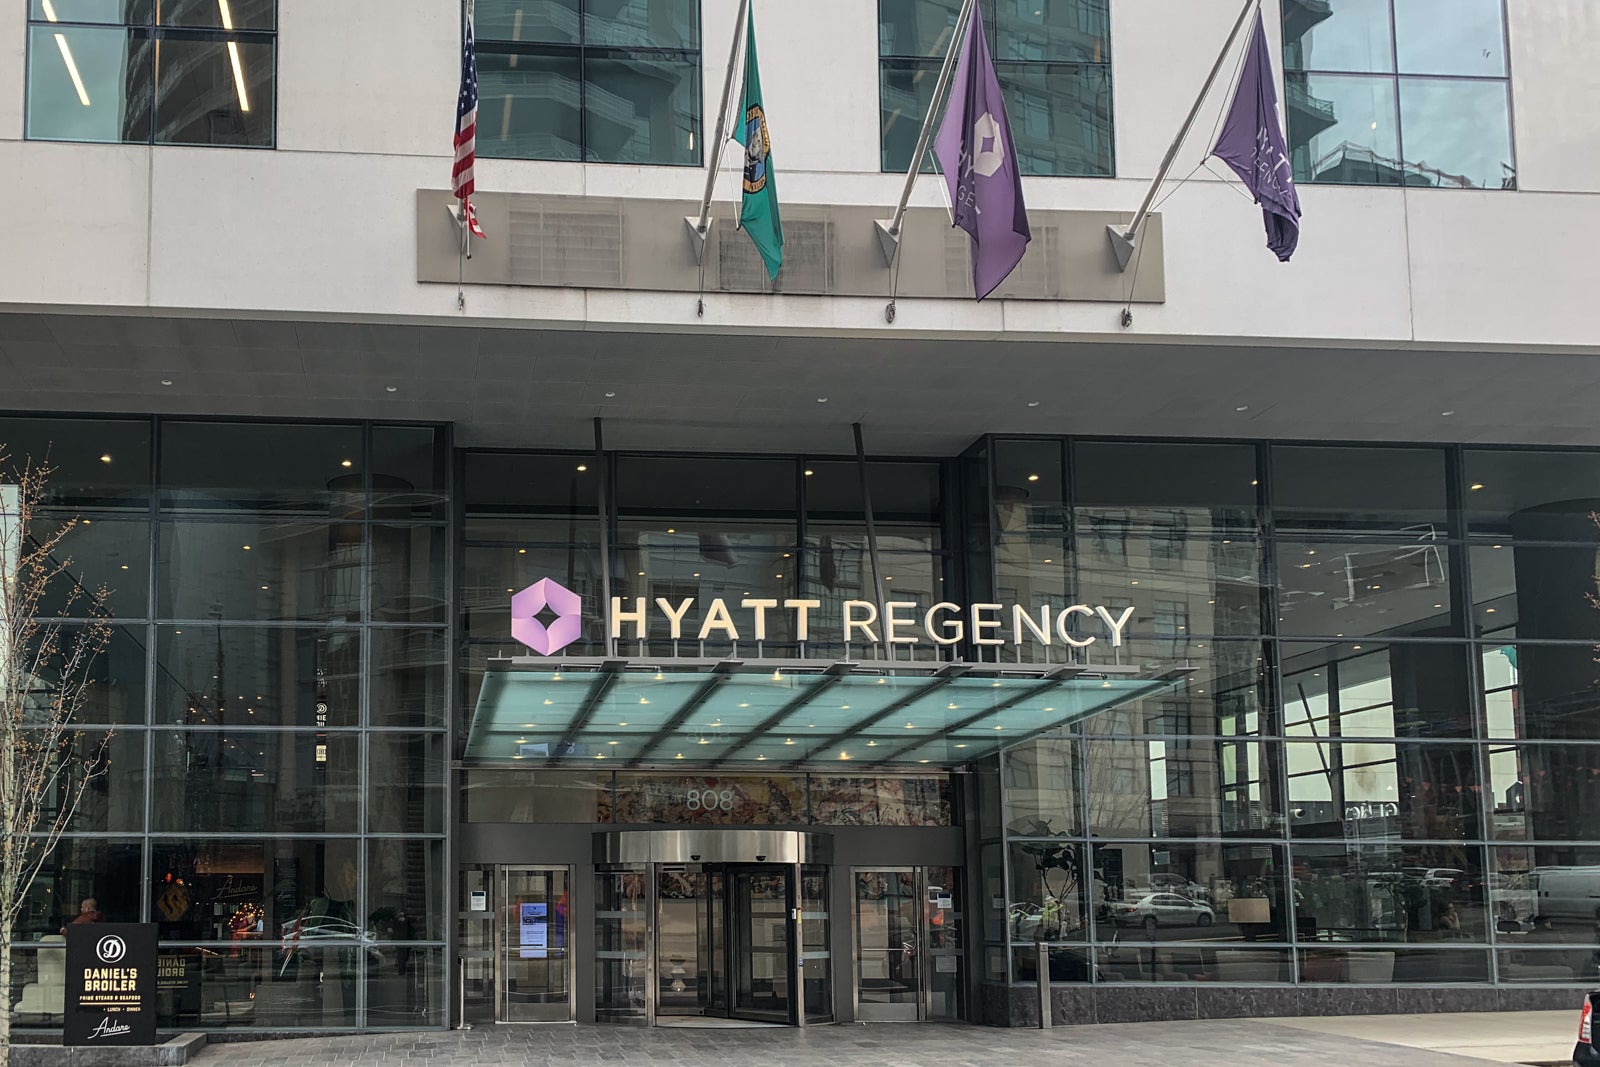 Hyatt Regency front of hotel entrance in Seattle.